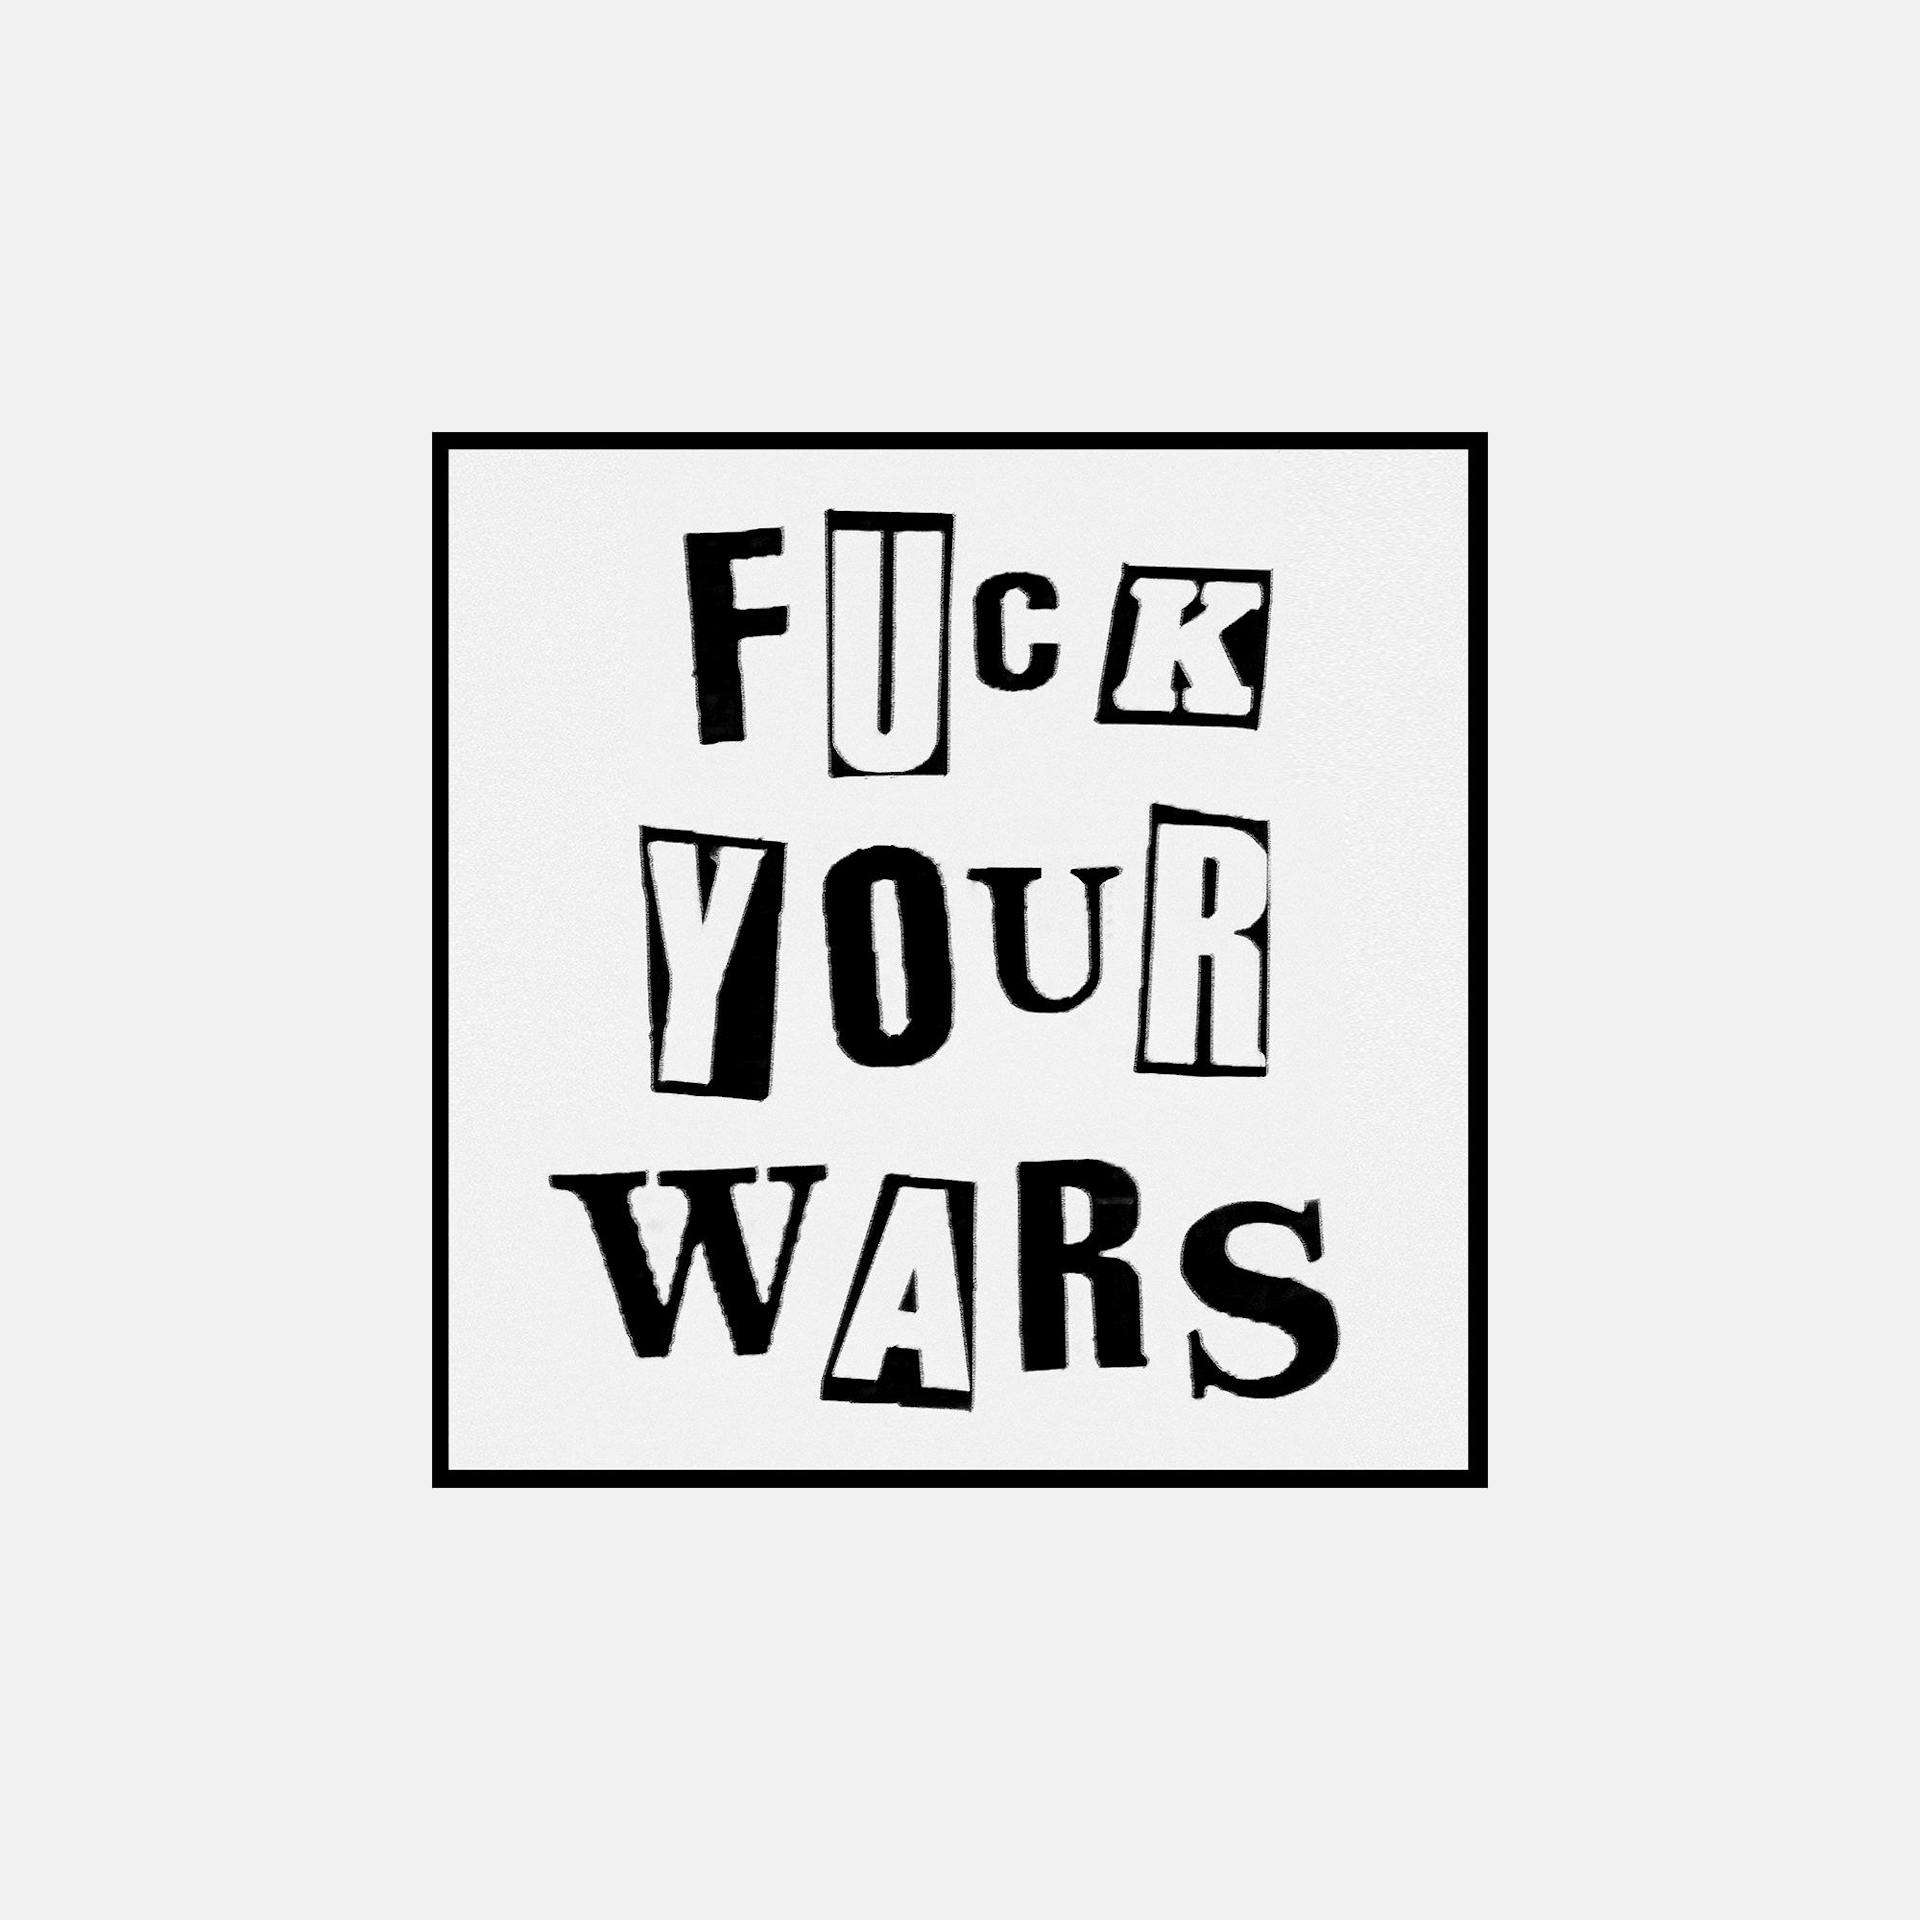 FUCK YOUR WARS art by Jamie Reid